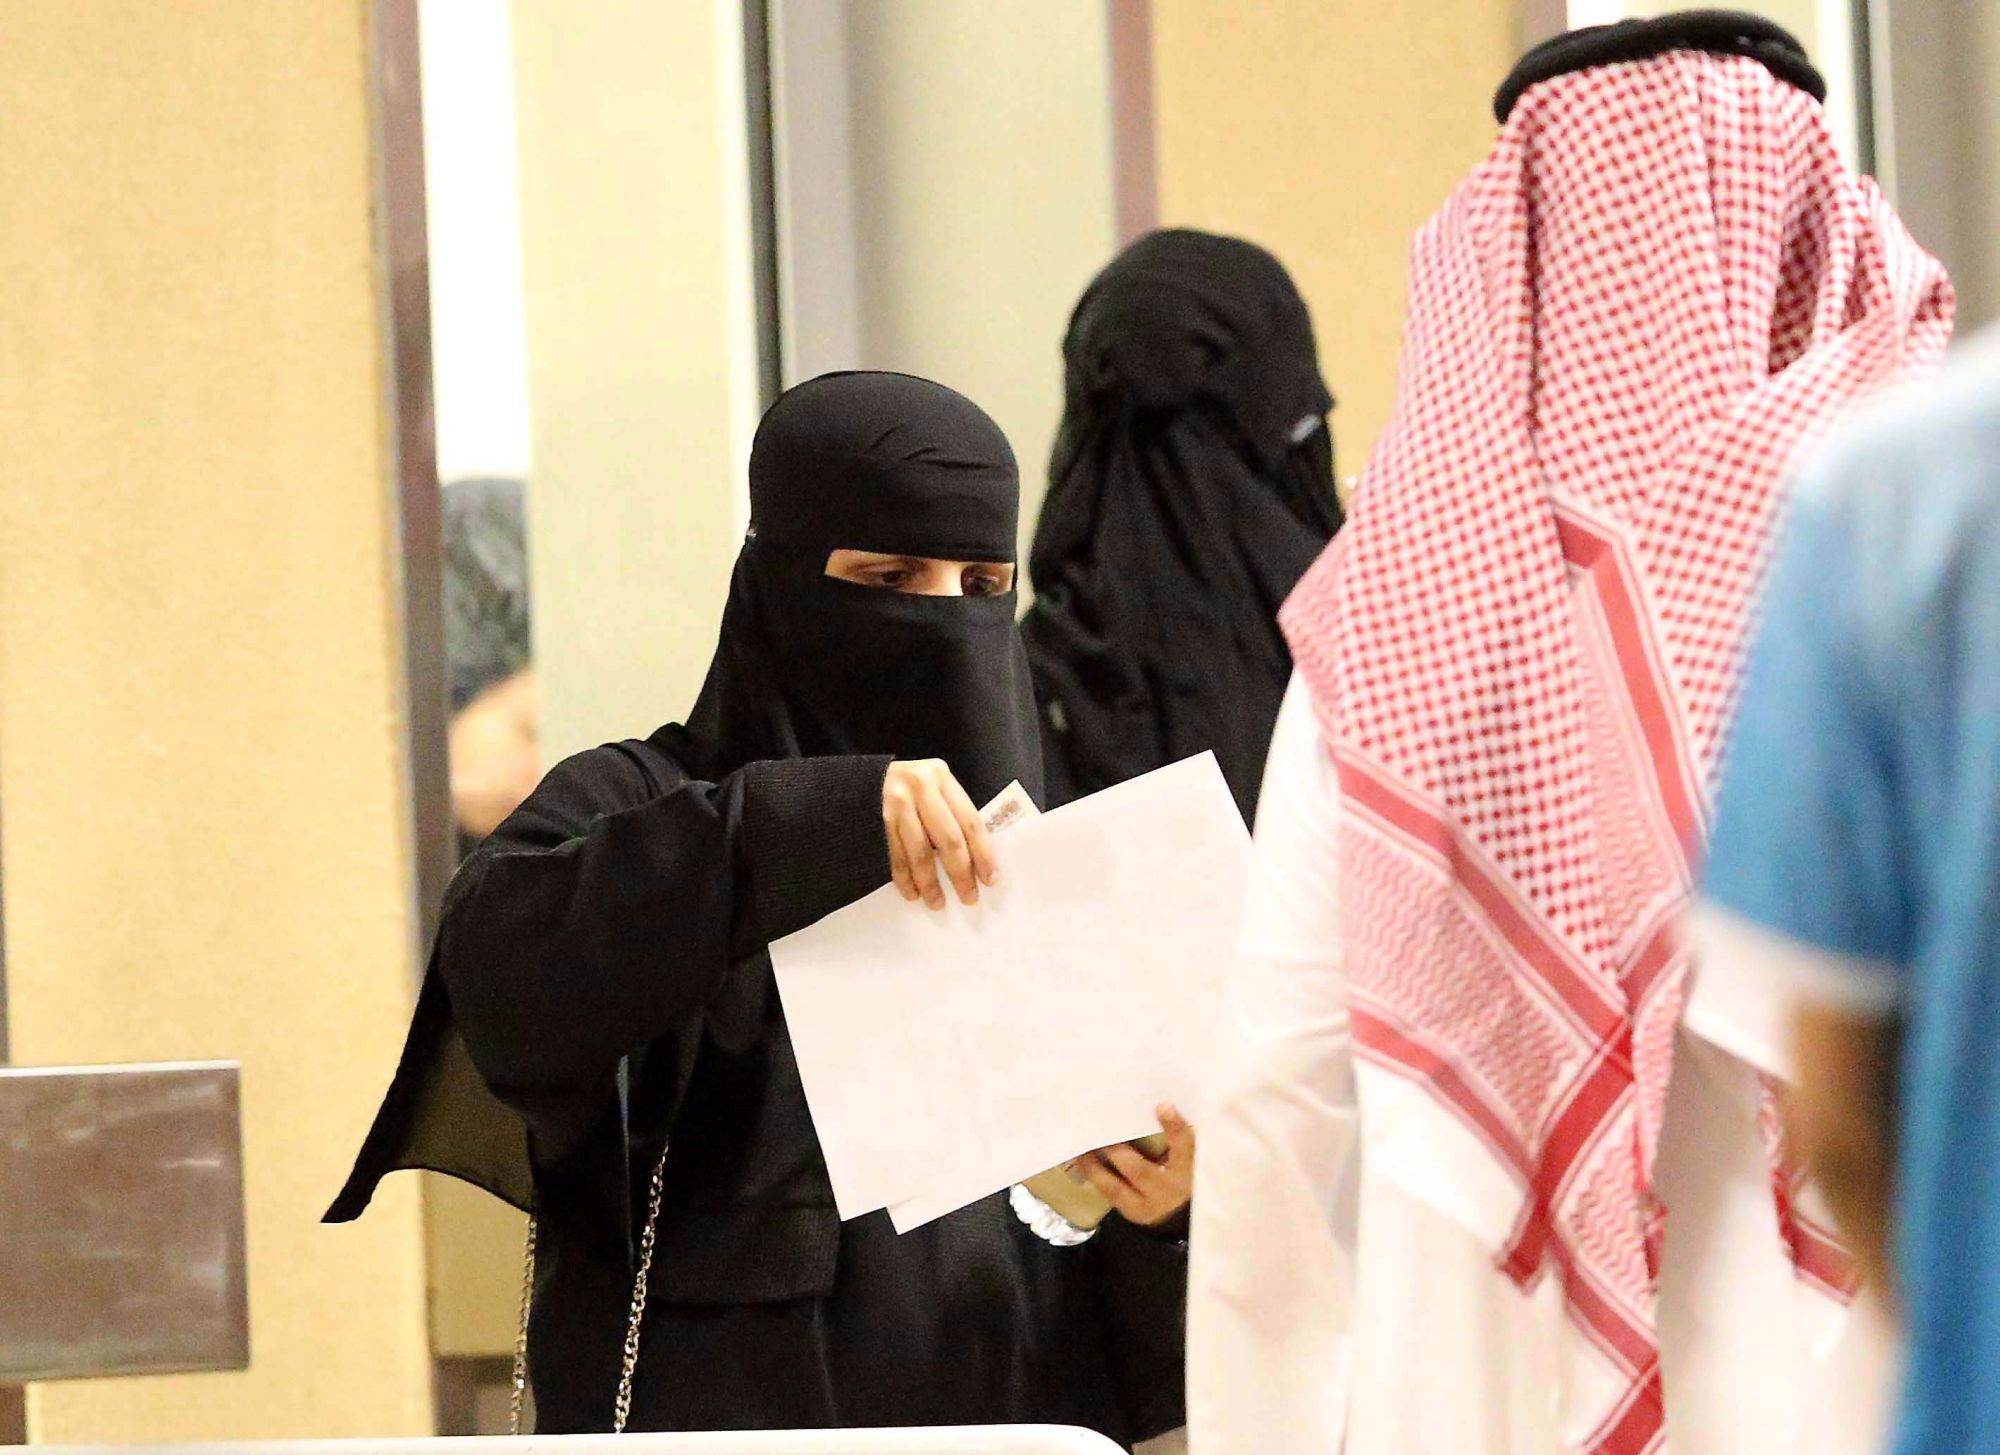 Nők érkeznek, hogy először nézhessenek meg a helyszínen egy labdarúgó-mérkőzést a dzsiddai Abdalláh Király Stadionban 2018. január 12-én. A szaúdi első osztályban szereplő al-Ahli és al-Batin bajnoki mérkőzésének jutott a történelmi szerep, hogy a muzulmán királyságban először nők jelenlétében játszották le. (MTI/EPA)